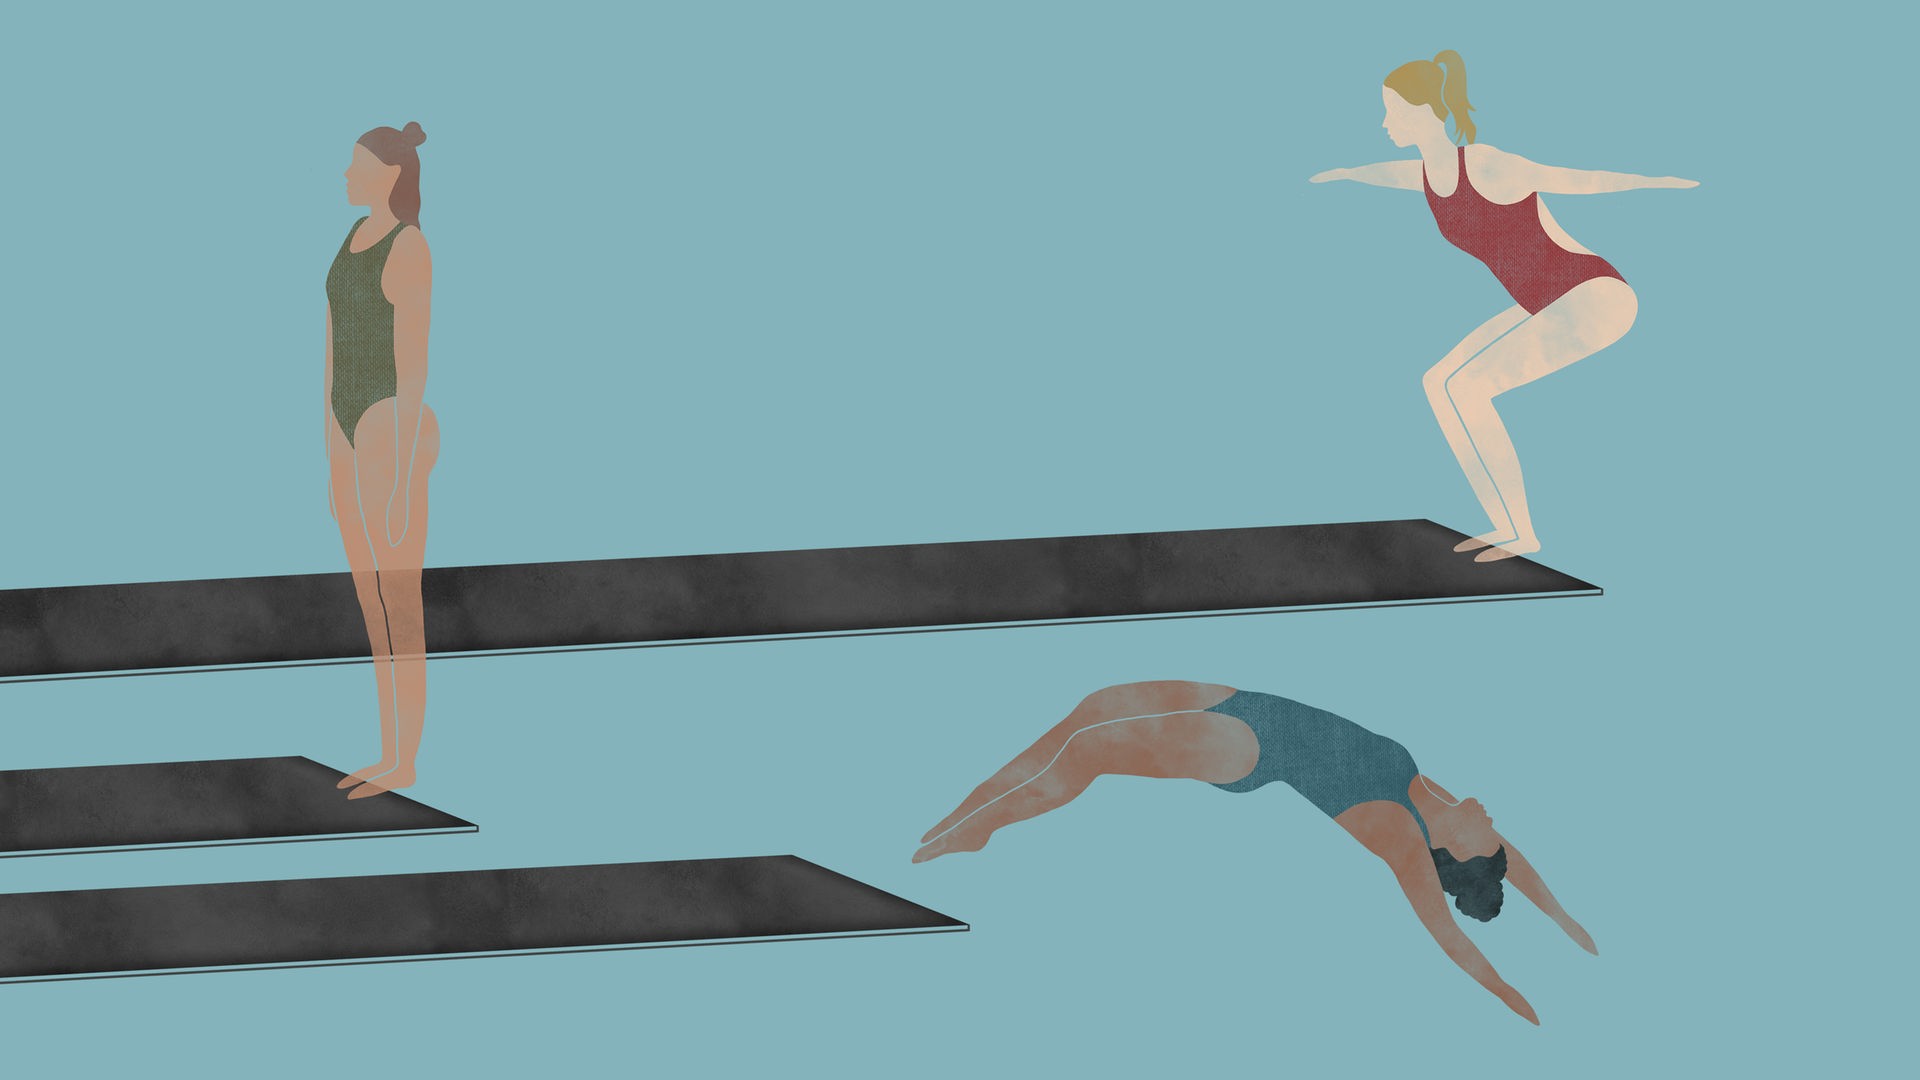 Die Turmspringerinnen: Die Zeichnung zum Podcast zeigt drei Turmspringerinnen auf Sprungbrettern. Eine bereitet sich auf den Sprung vor, eine ist kurz vor dem Absprung, die dritte ist schon in der Luft